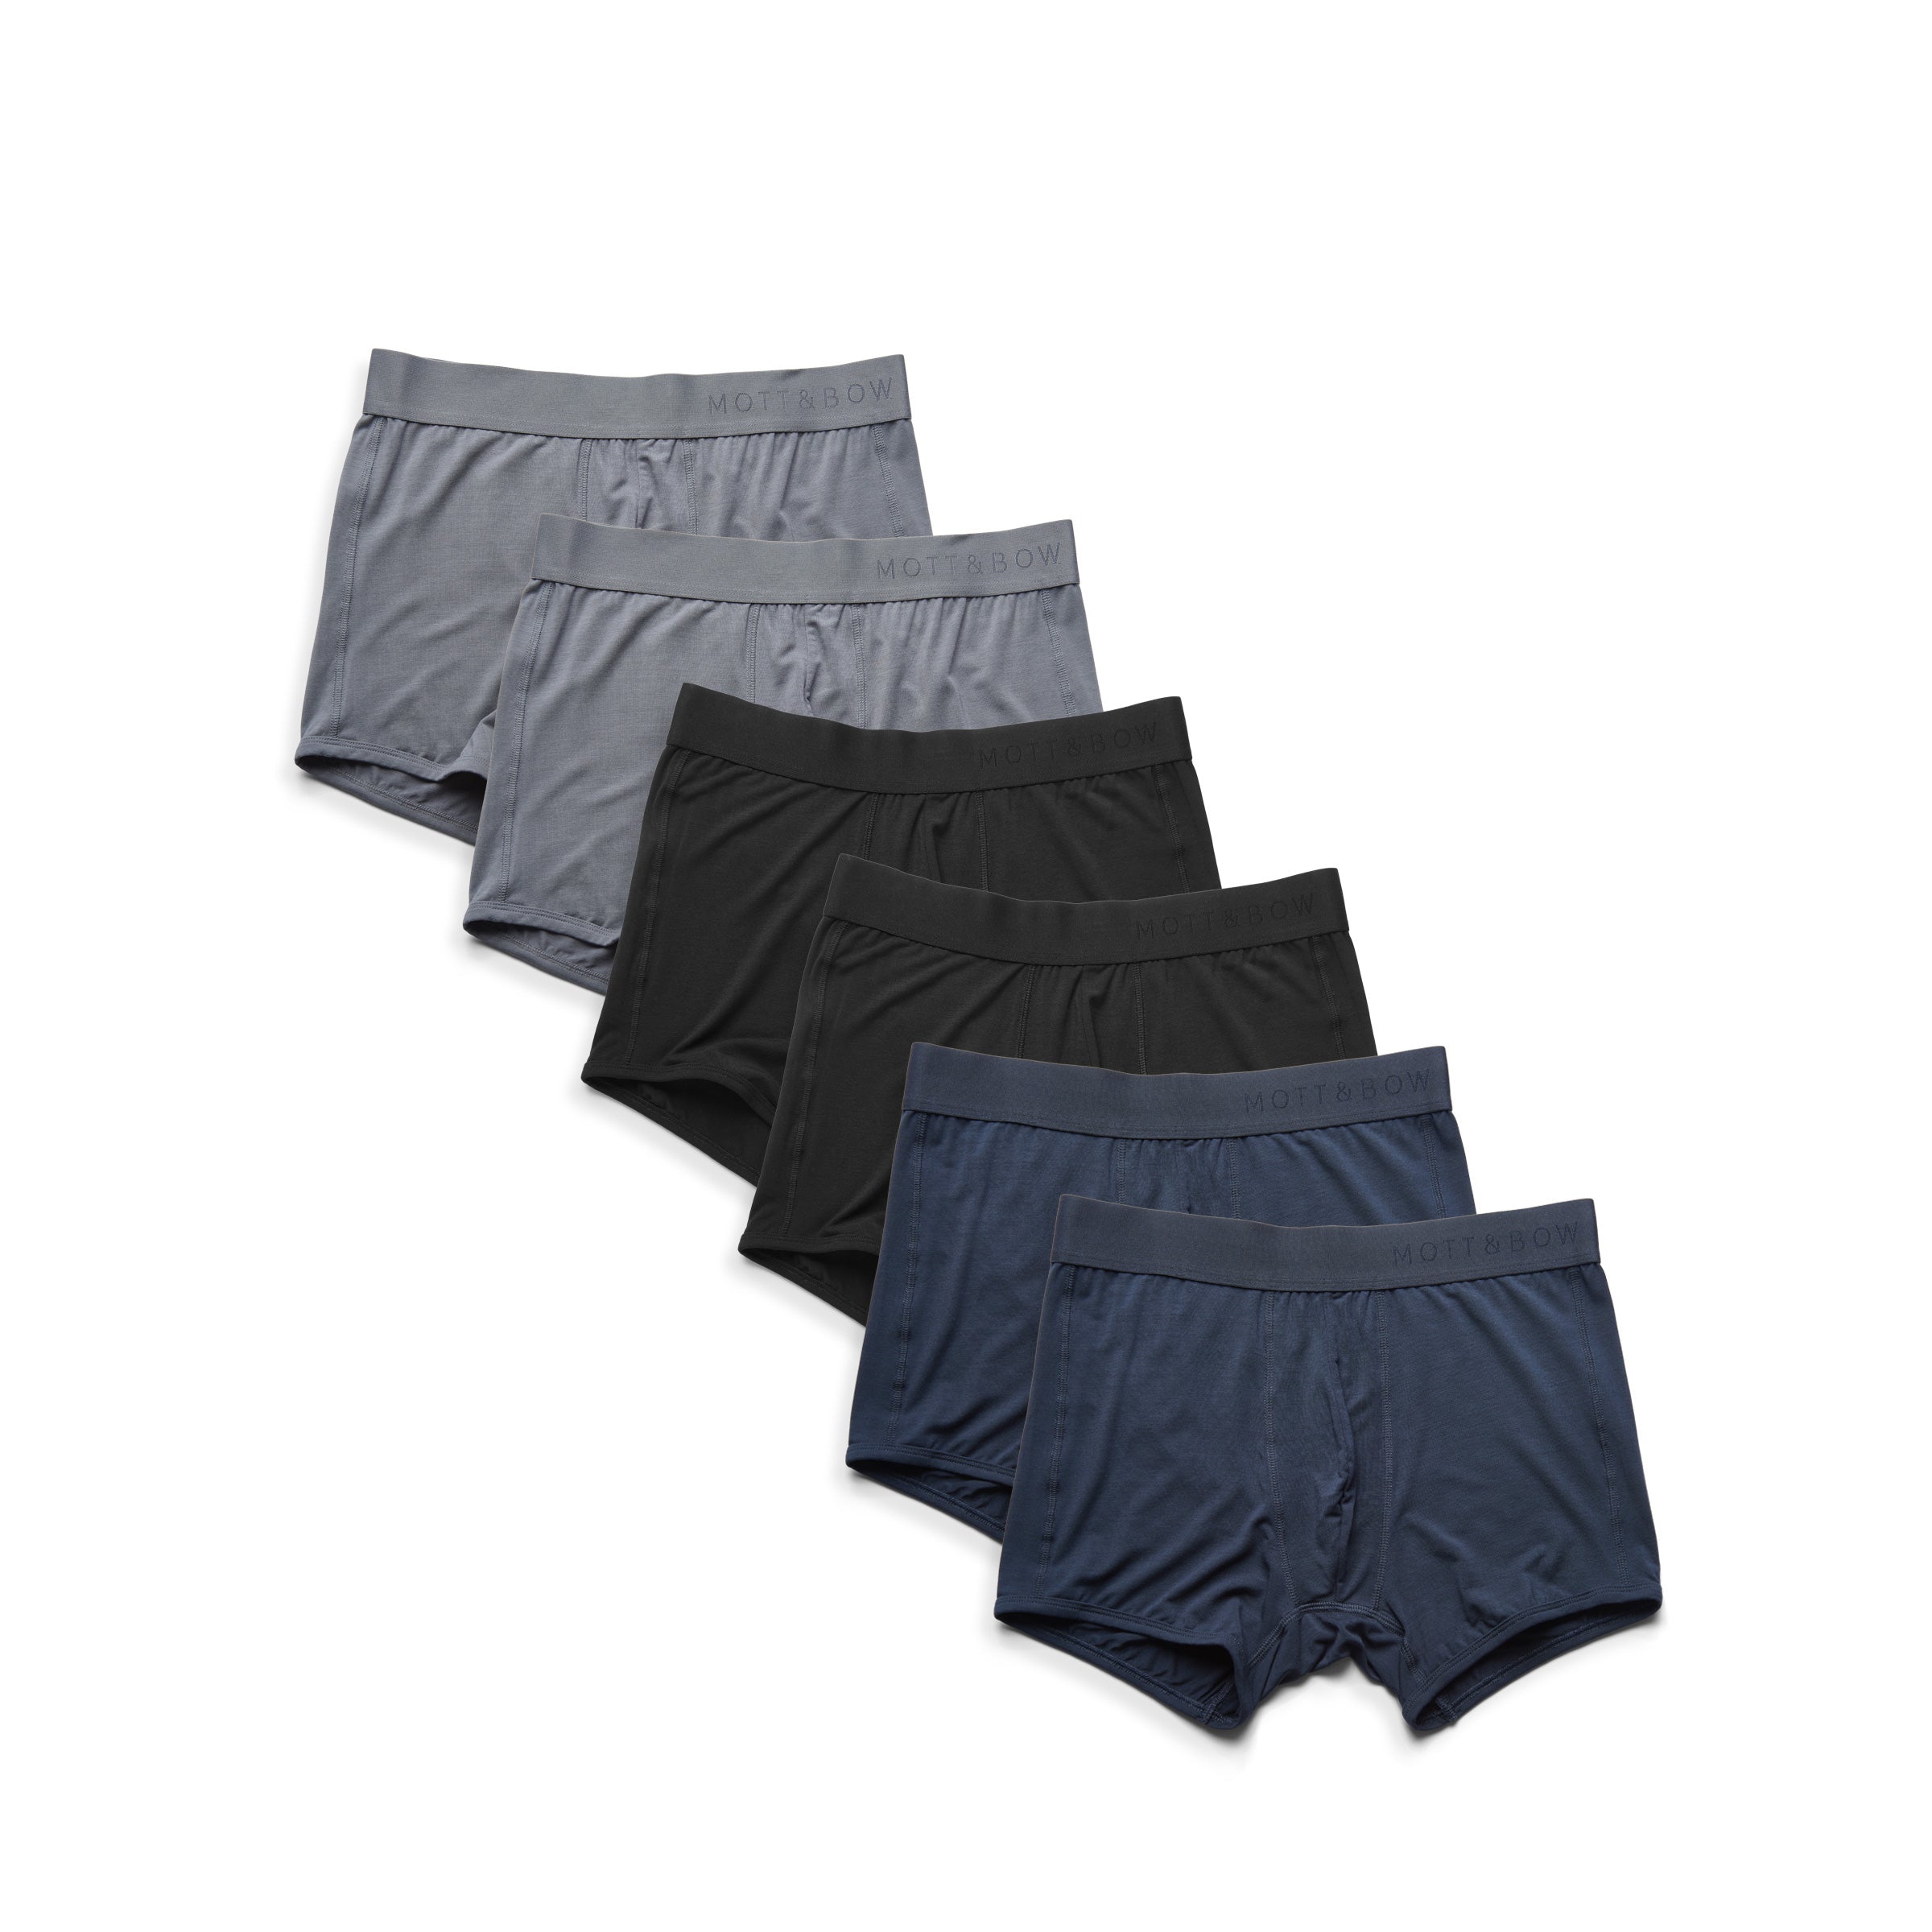  wearing Gray/Black/Navy Trunks 6-Pack